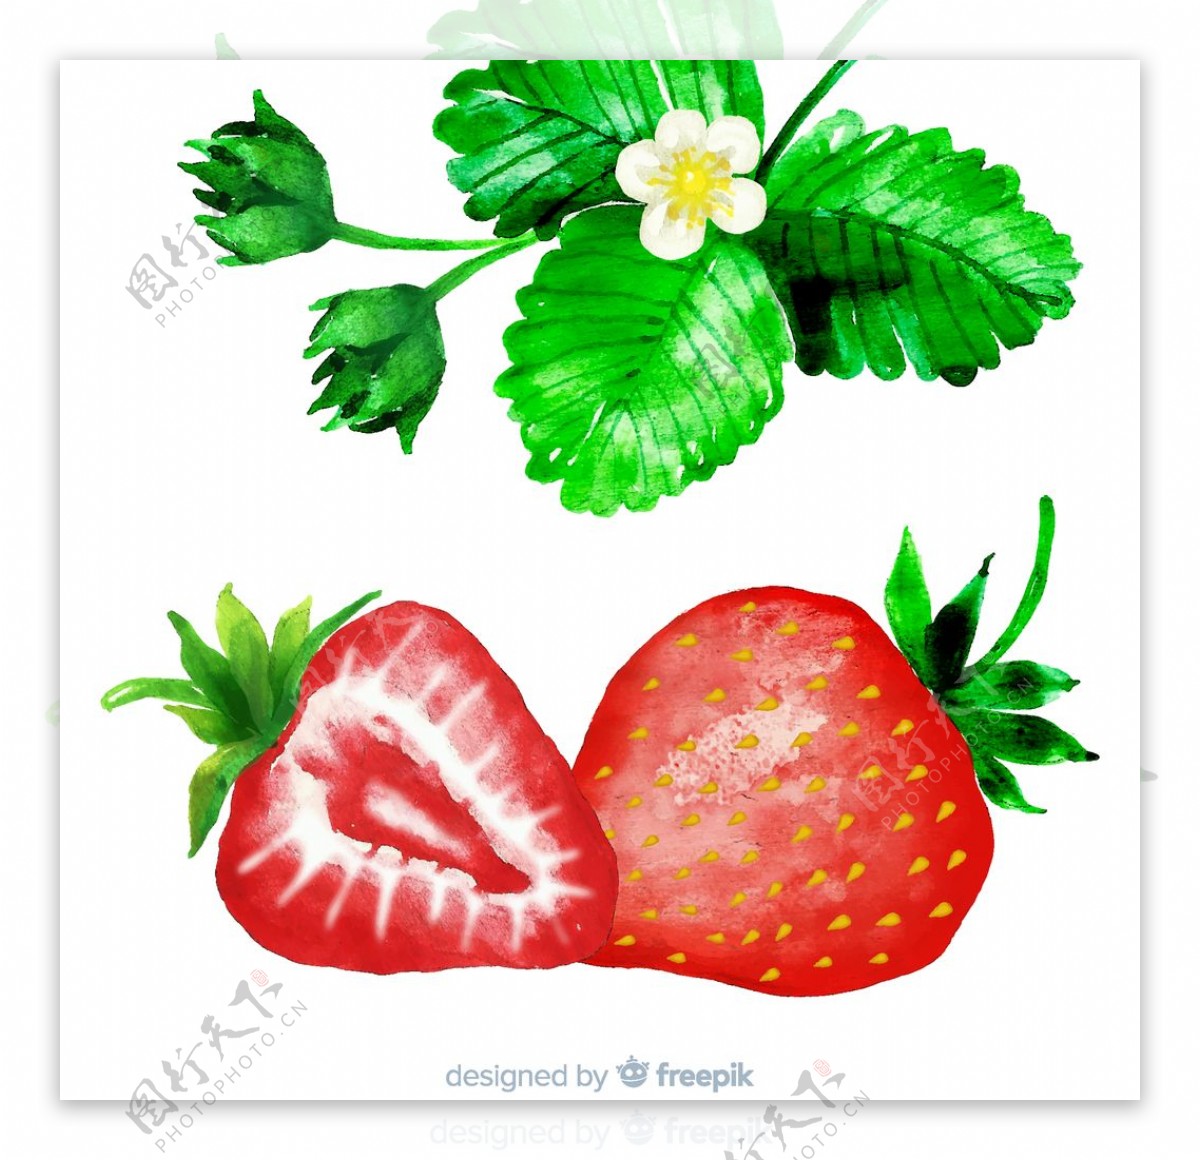 水彩绘草莓和草莓叶